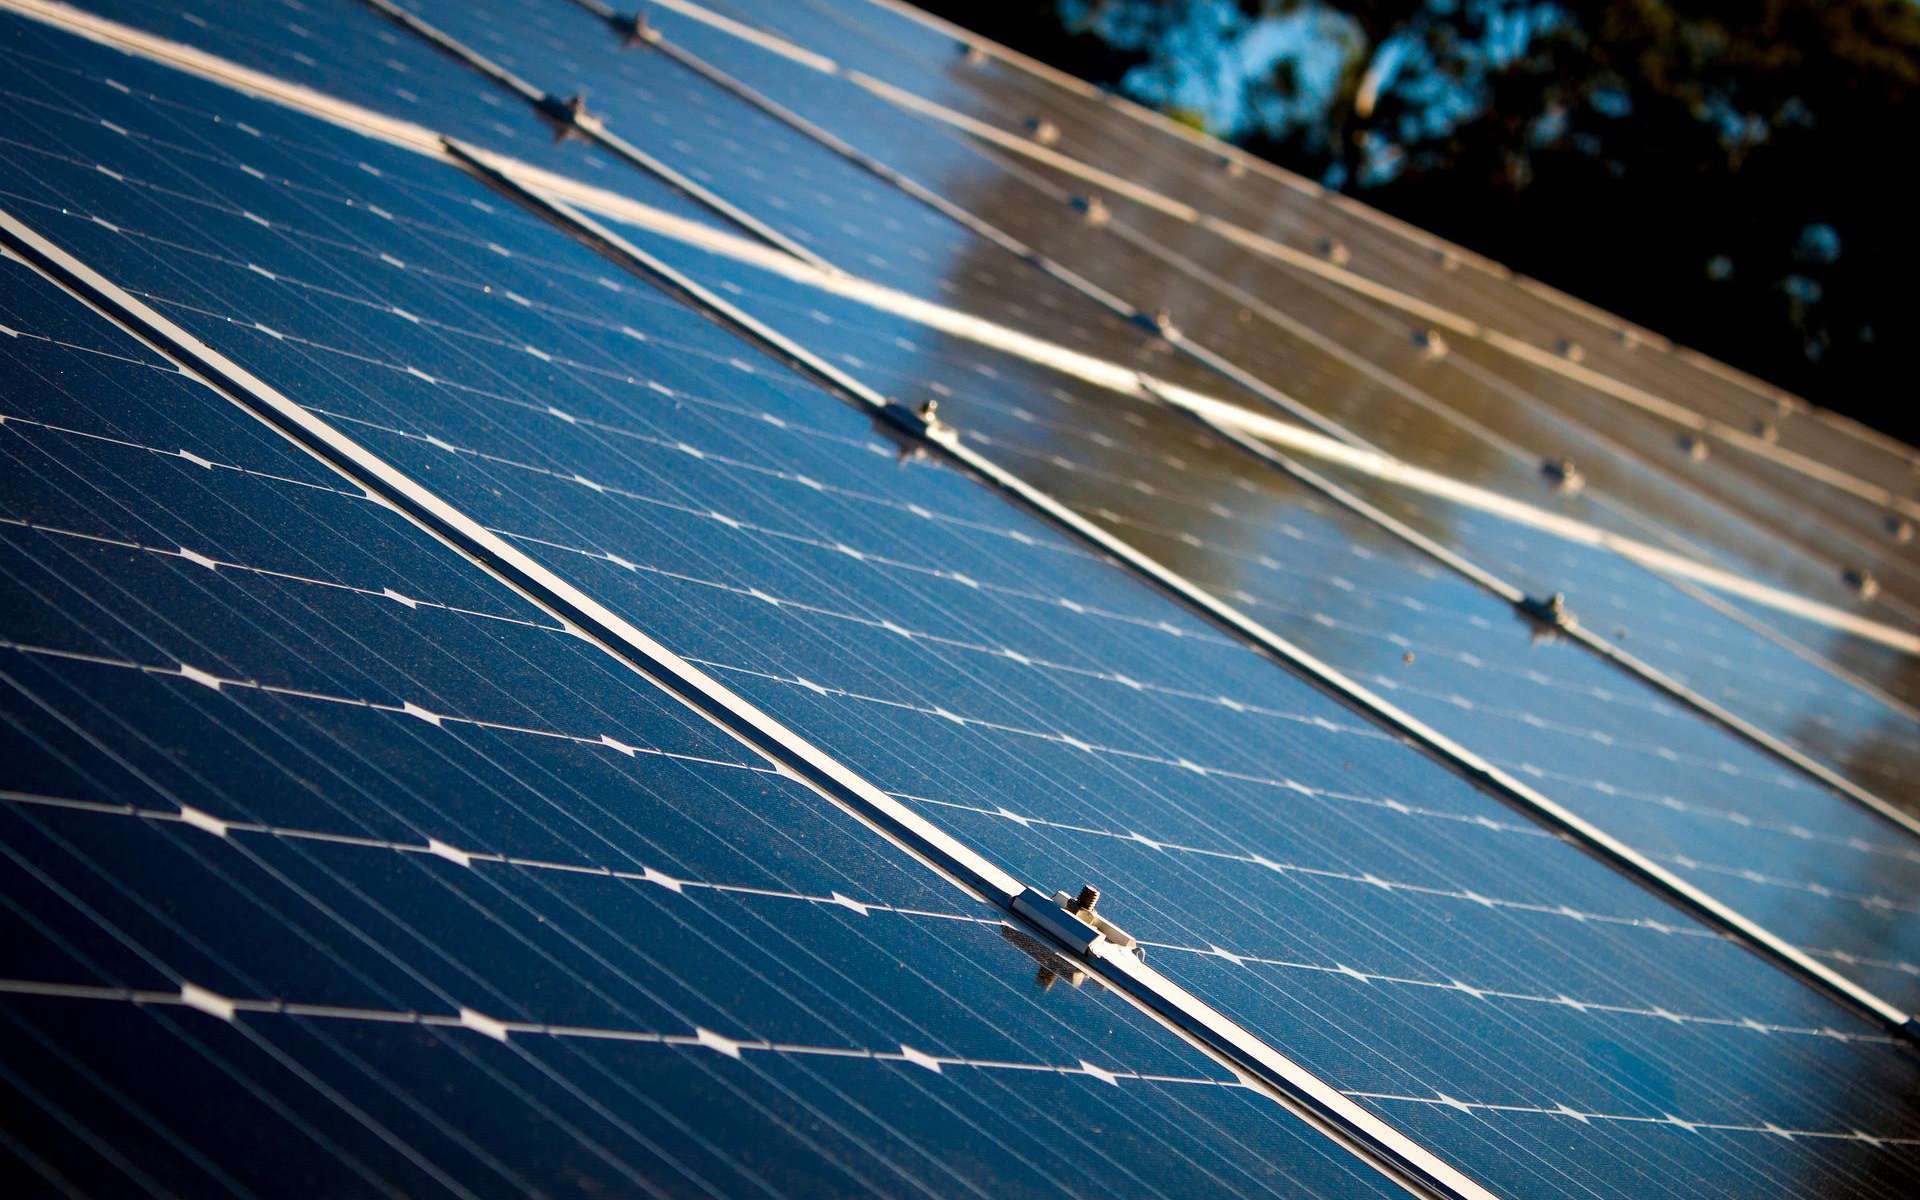 La crise énergétique et l'augmentation des tarifs qui en découlent vont accélérer le développement et l'adoption des systèmes d'énergies renouvelables domestiques. © StockSnap/Pixabay